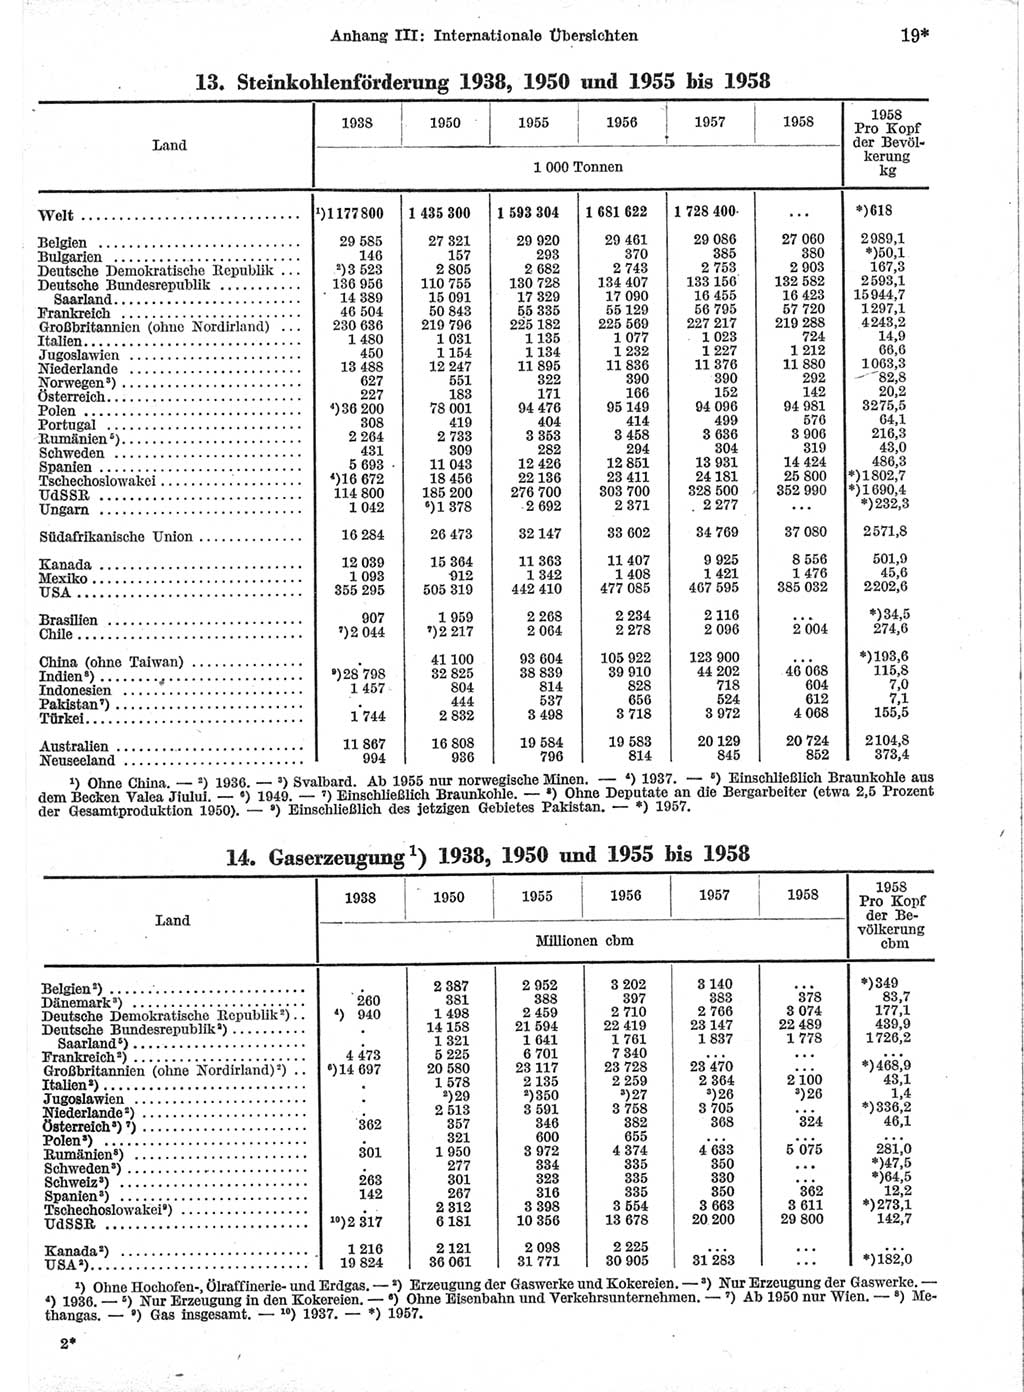 Statistisches Jahrbuch der Deutschen Demokratischen Republik (DDR) 1959, Seite 19 (Stat. Jb. DDR 1959, S. 19)